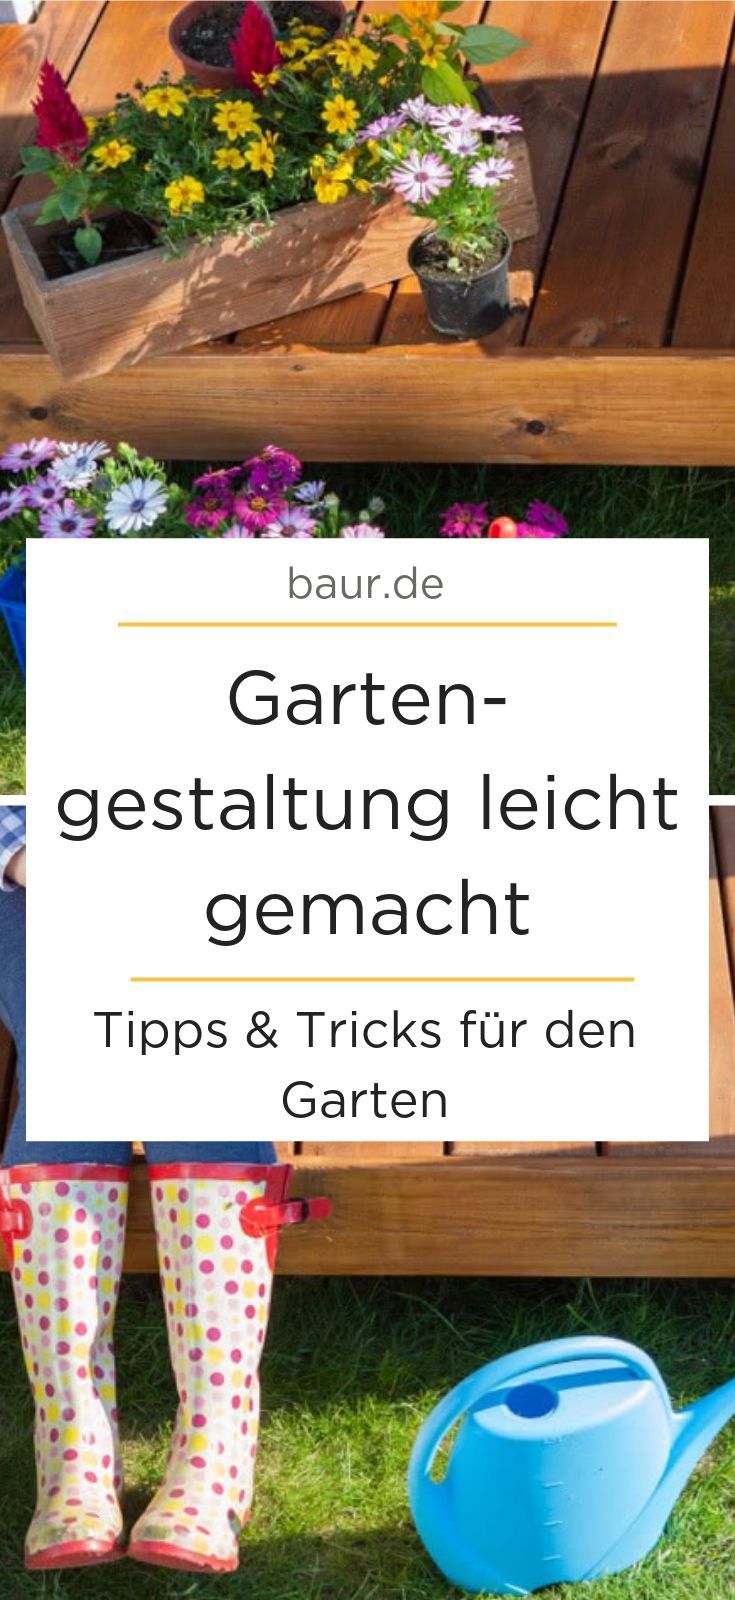 Pflegeleichter Garten Bilder Schön Gartengestaltung Leicht Gemacht Tipps Und Tricks Für Den